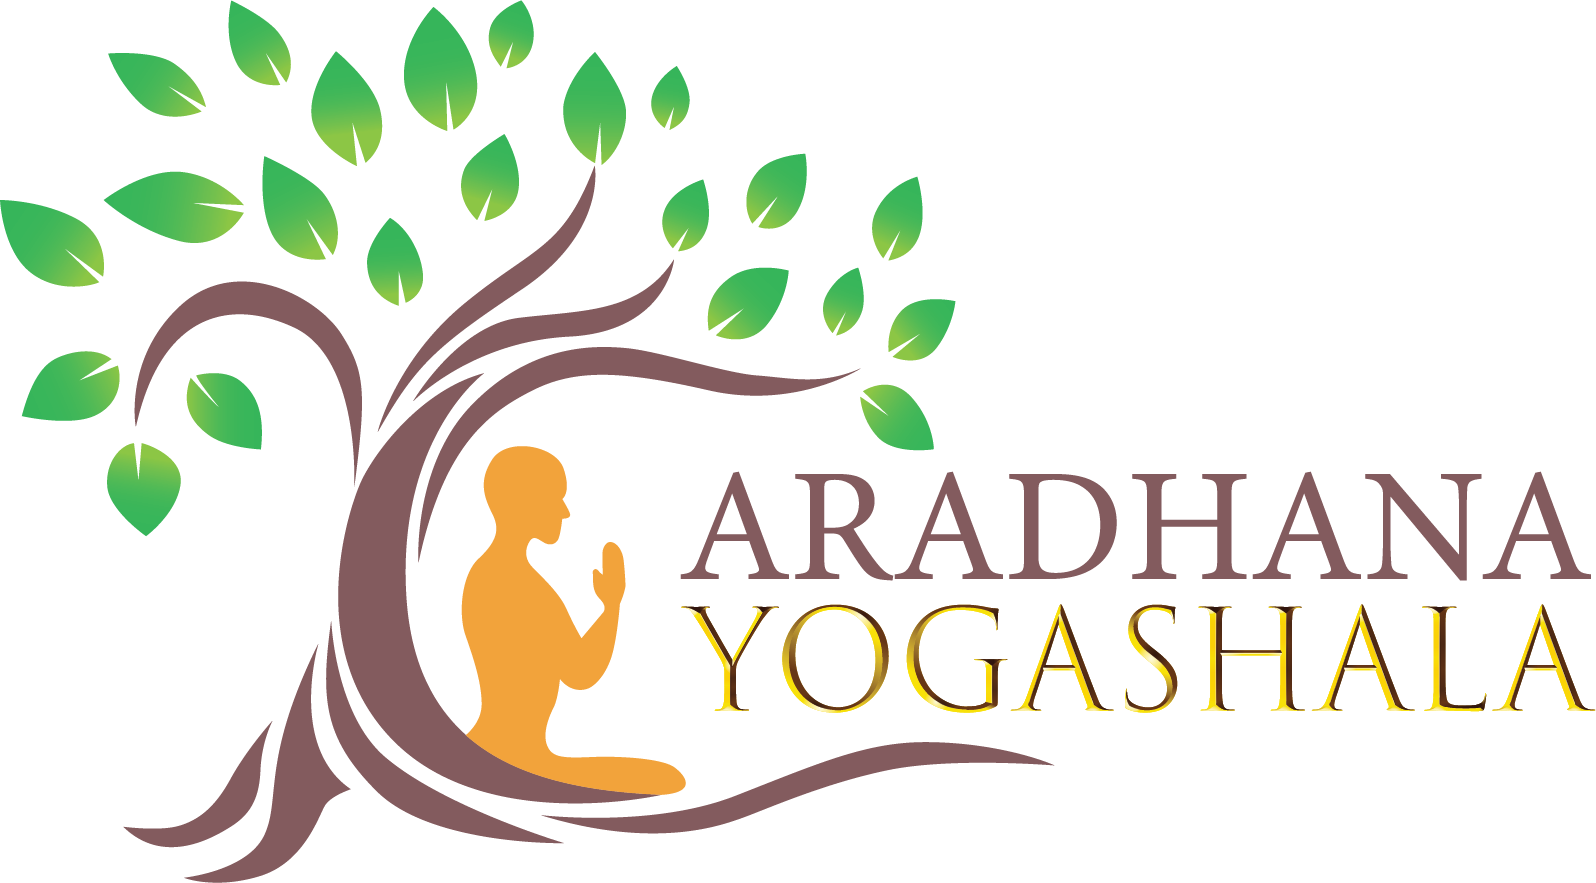 Latest Blogs and News of Aradhana Yogashala